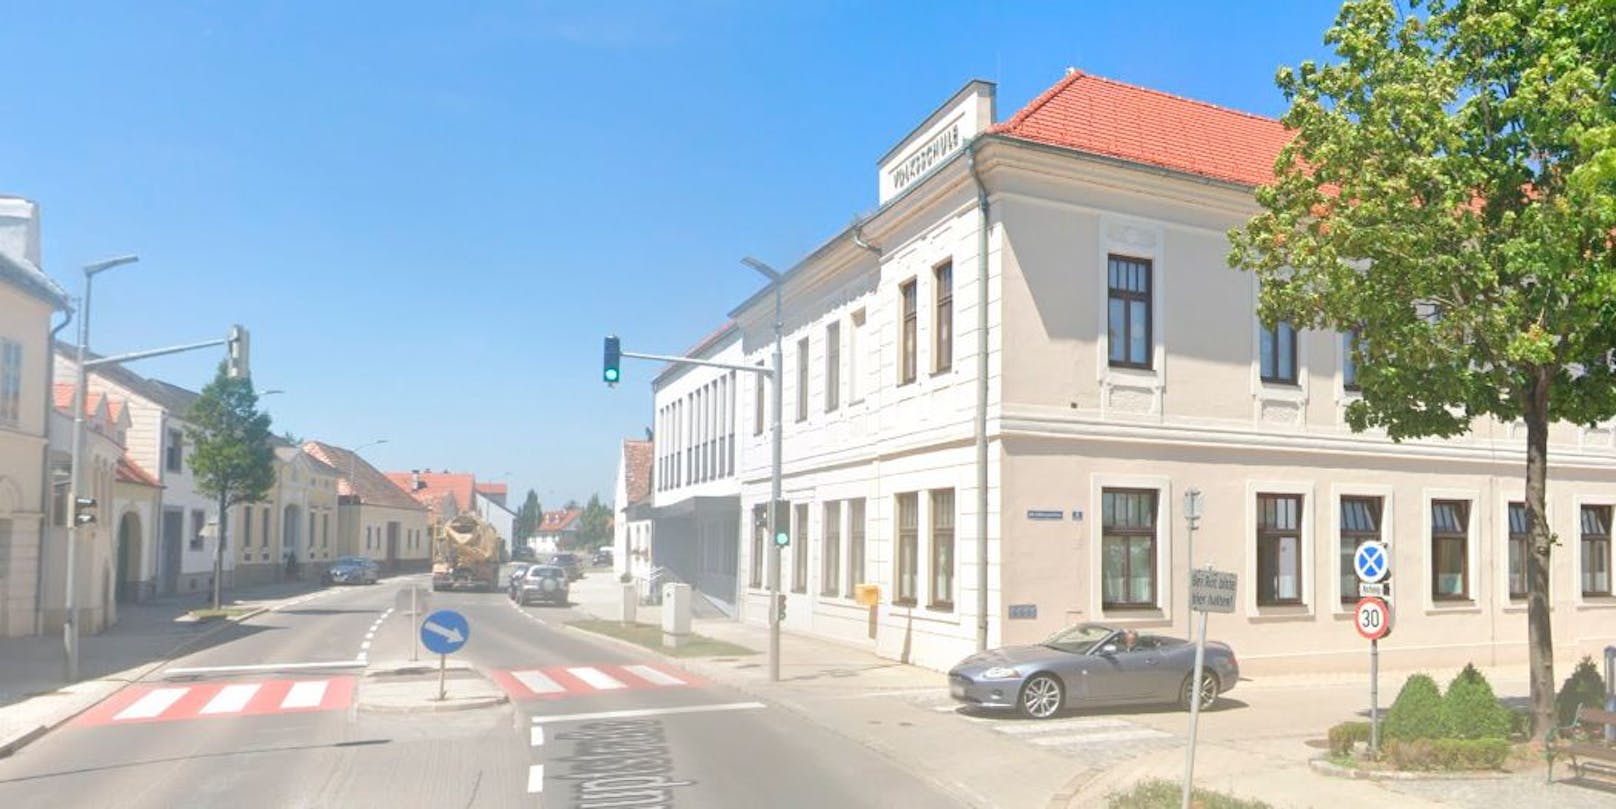 Die Volksschule Trausdorf liegt mitten im Ortszentrum gegenüber der Pfarrkirche